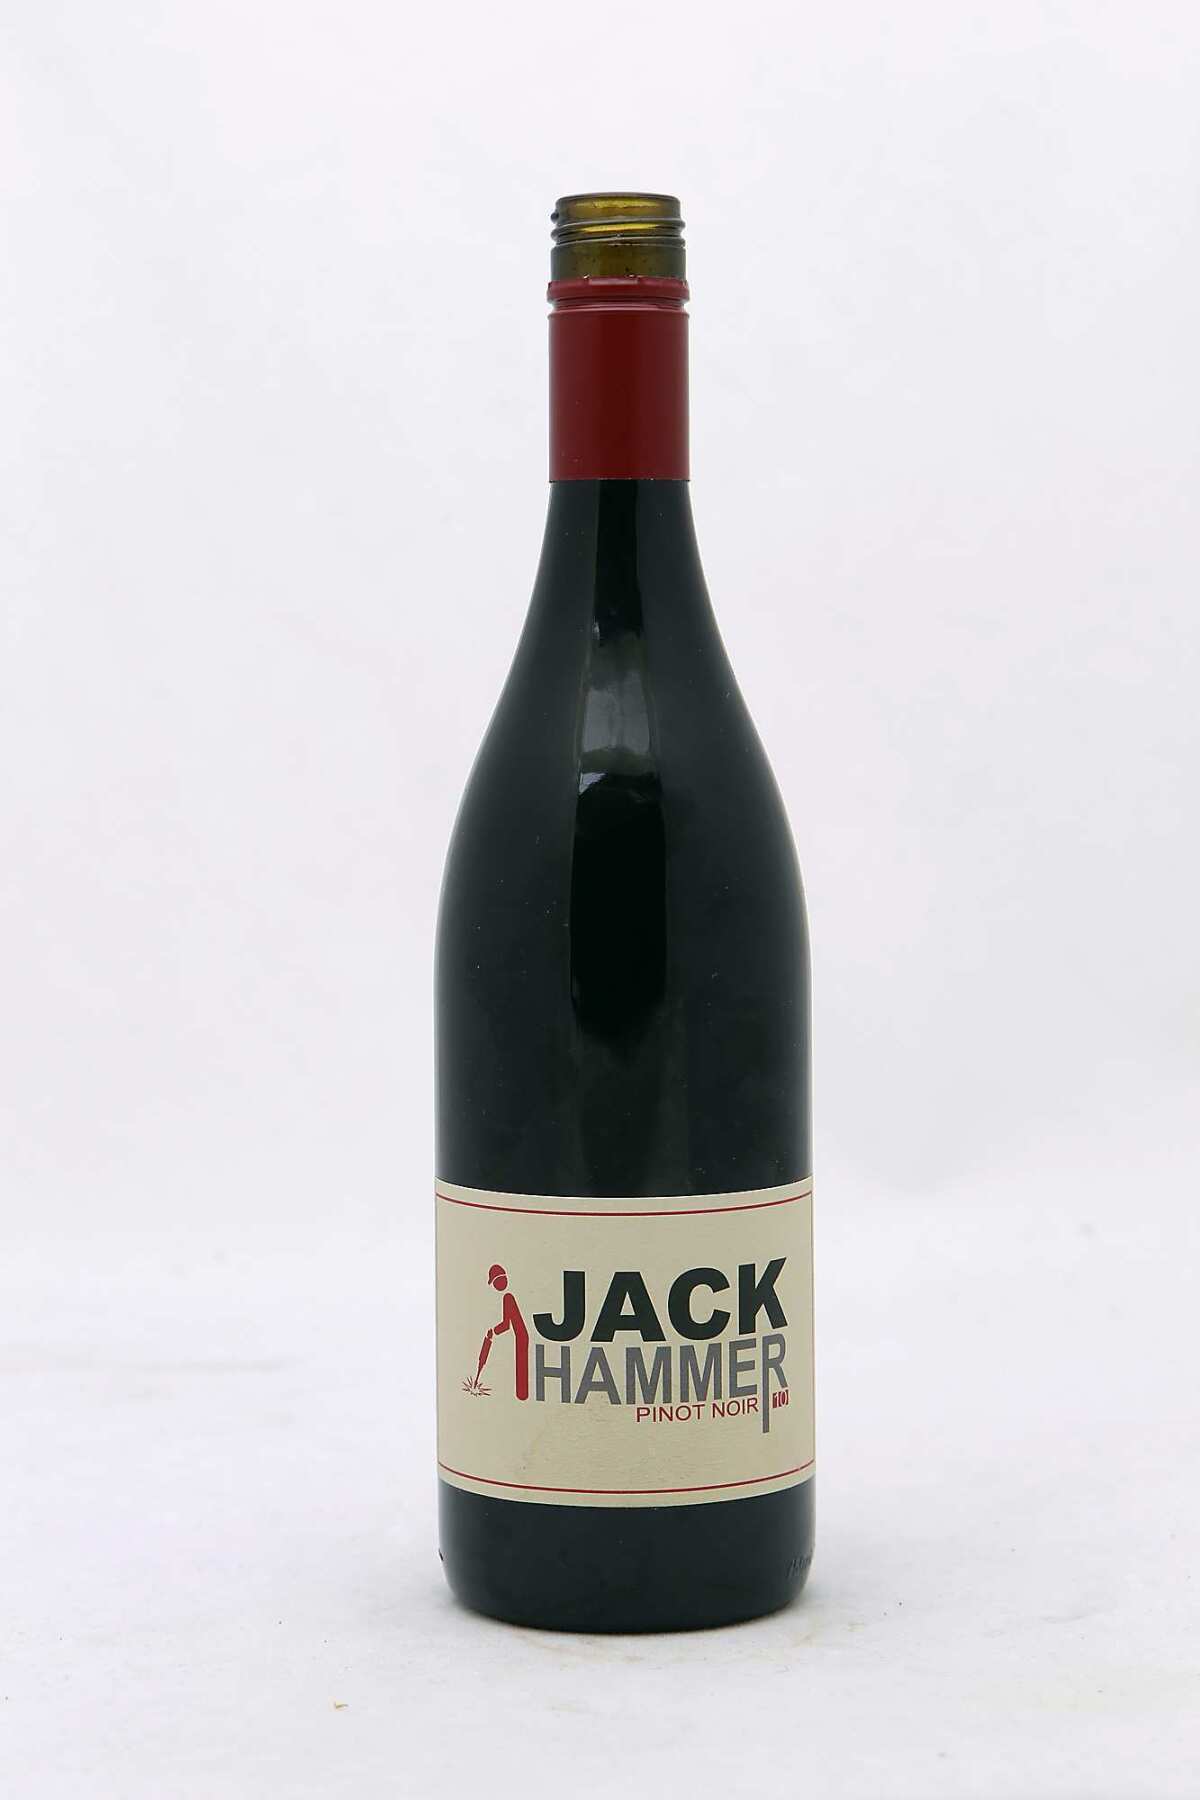 2010 Jack Hammer Pinot Noir.